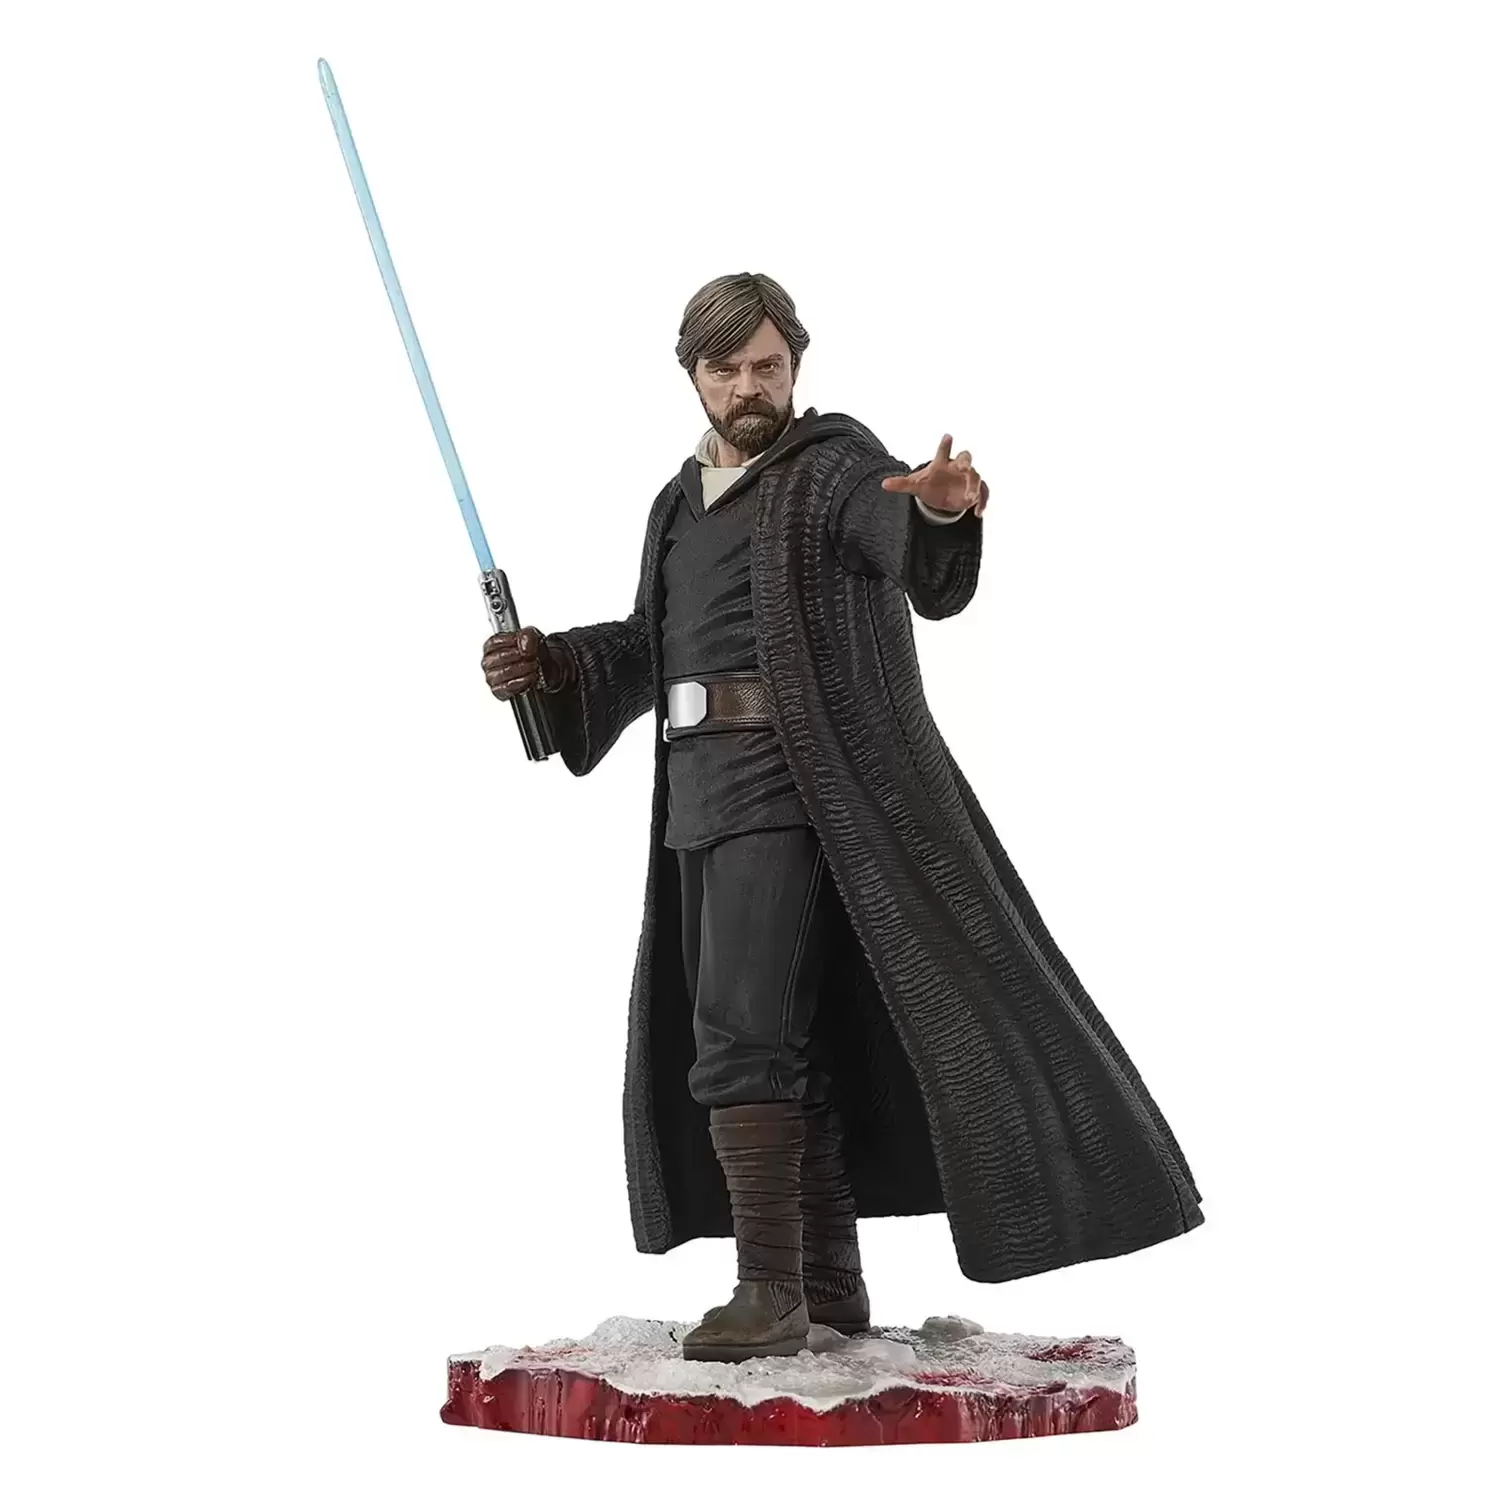 Gentle Giant Statues - Luke Skywalker - The last Jedi - Milestones